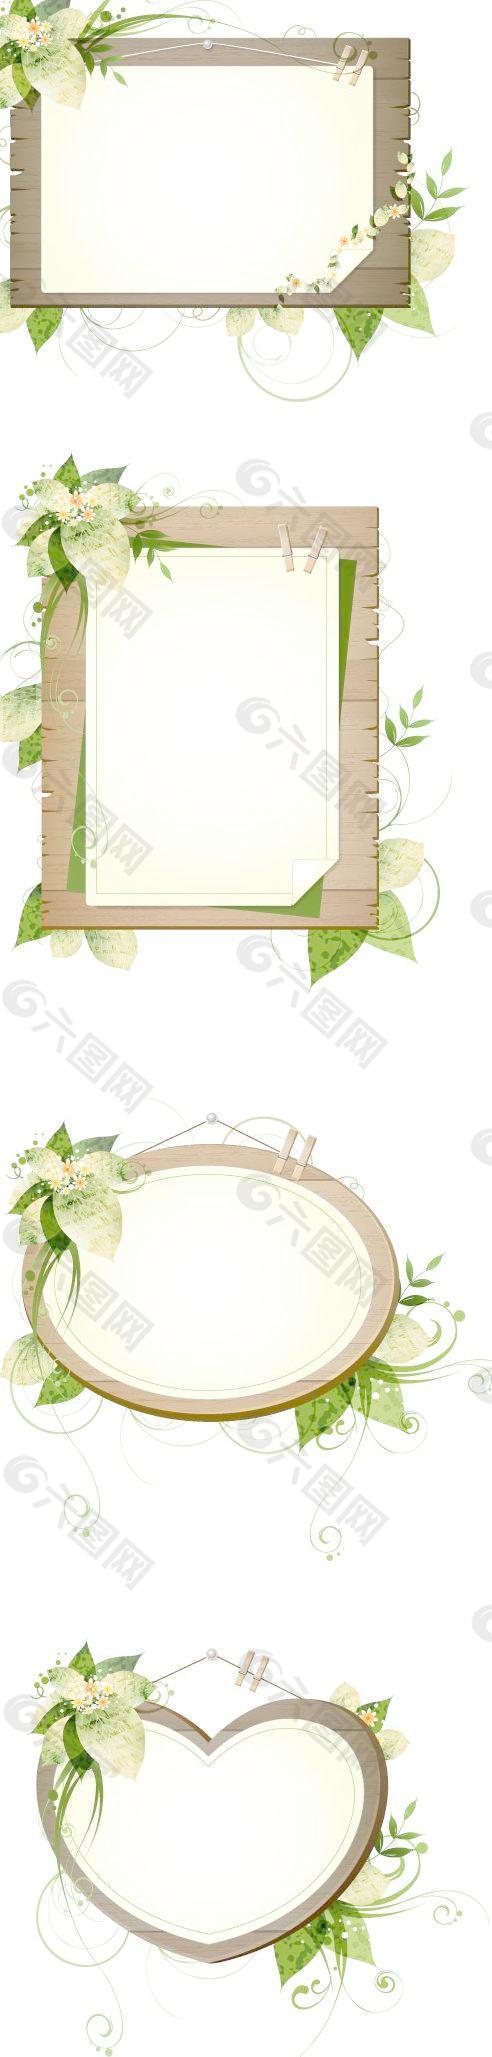 植物装饰木板边框